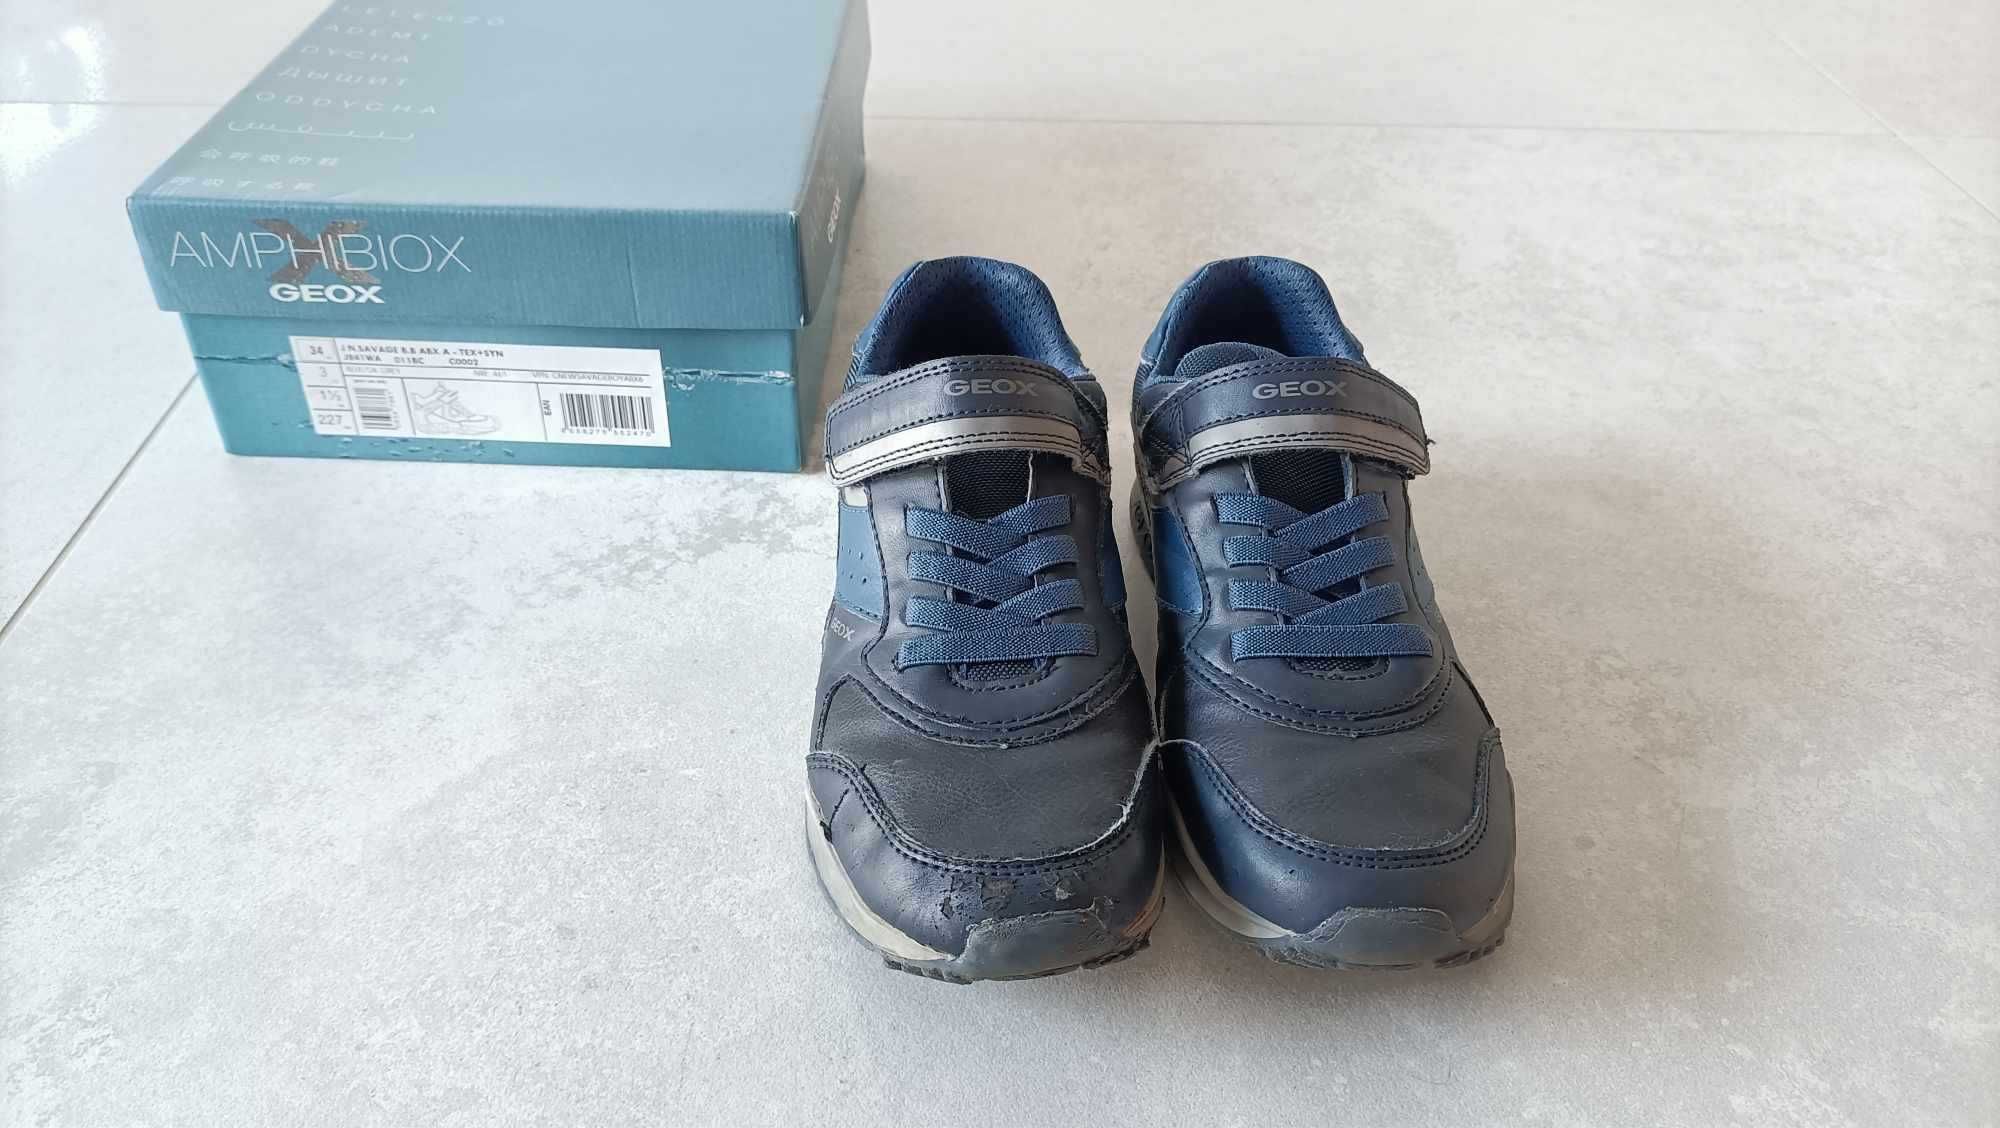 GEOX AMPHIBIOX buty półbuty przejściowe jesienne – rozmiar 36 –  23 cm